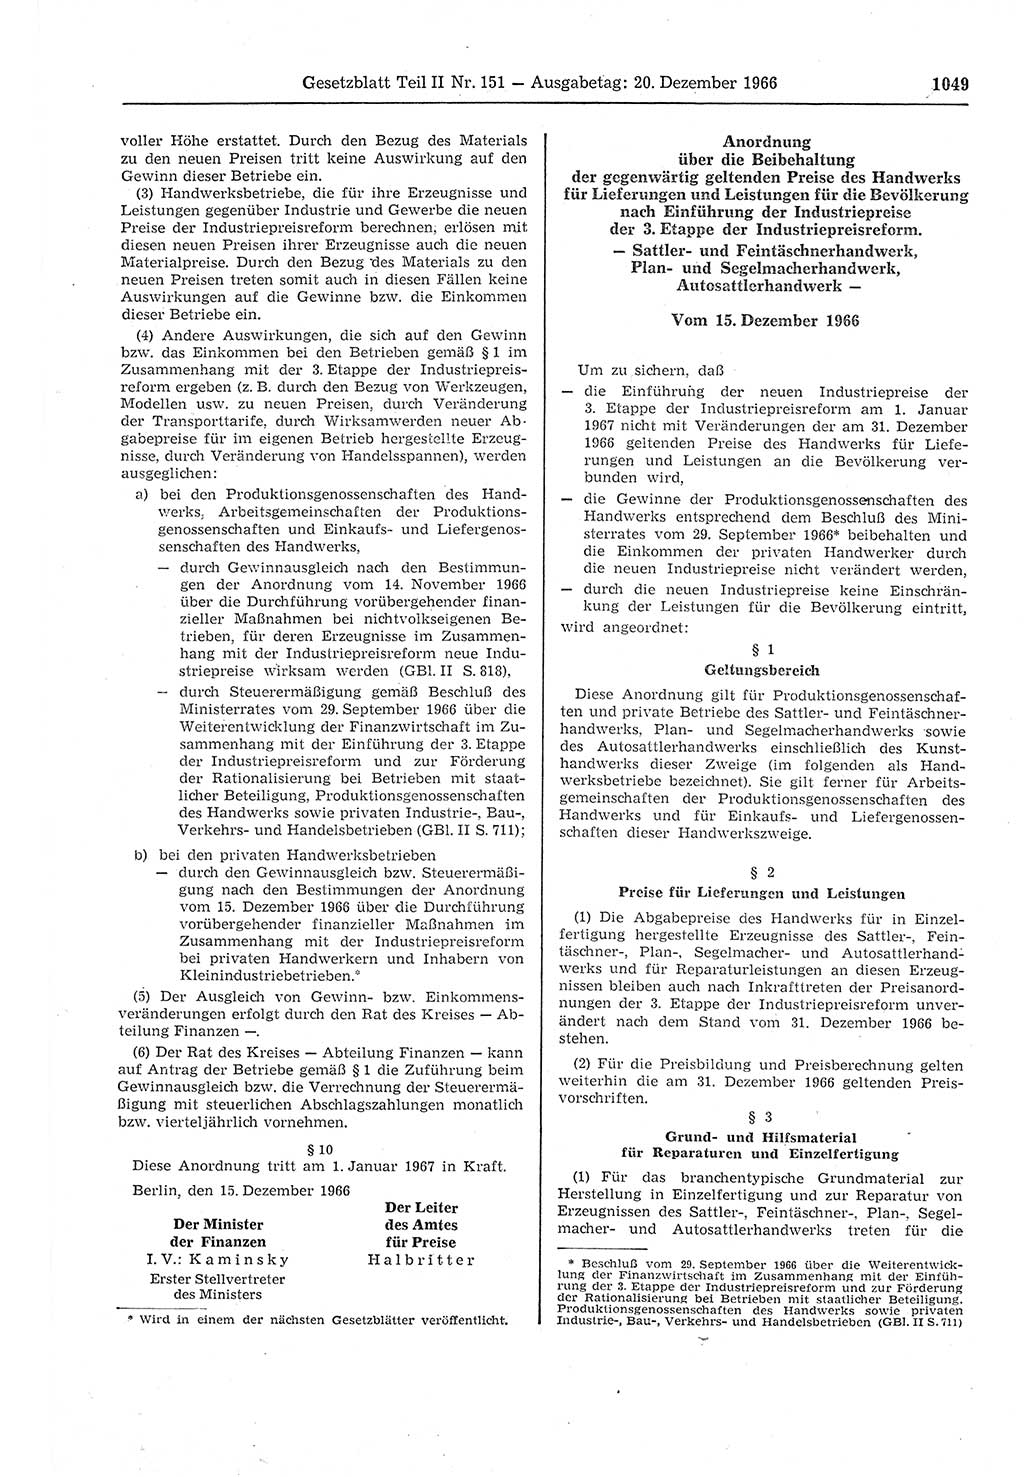 Gesetzblatt (GBl.) der Deutschen Demokratischen Republik (DDR) Teil ⅠⅠ 1966, Seite 1049 (GBl. DDR ⅠⅠ 1966, S. 1049)